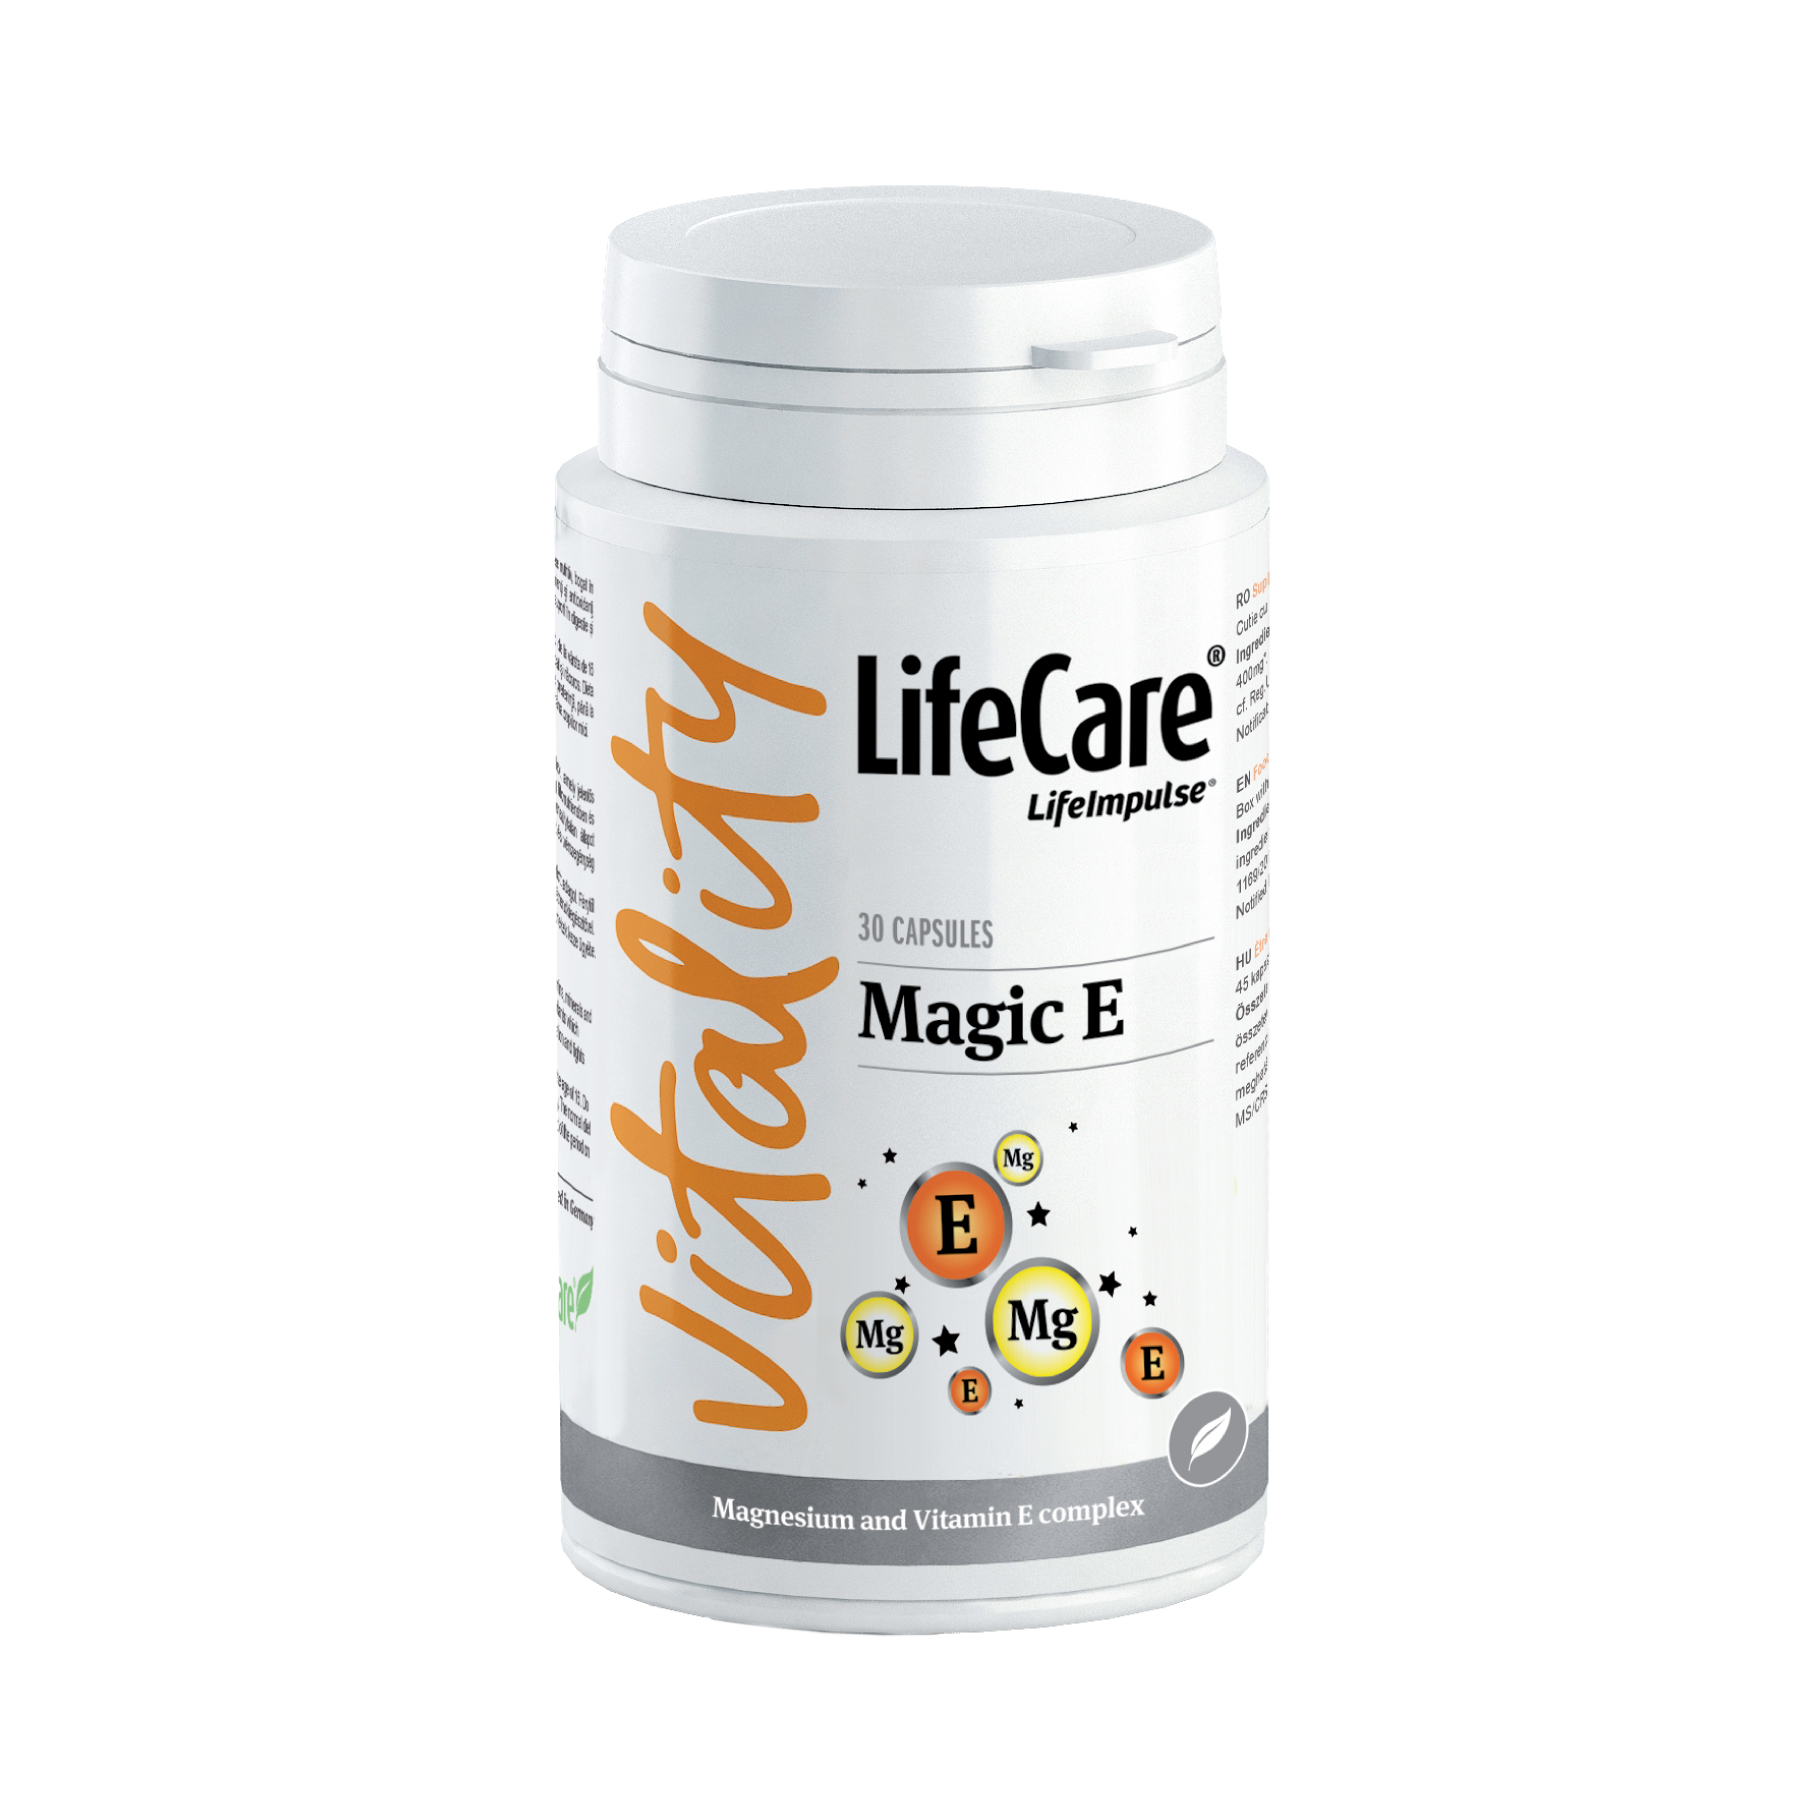 magic e life care)